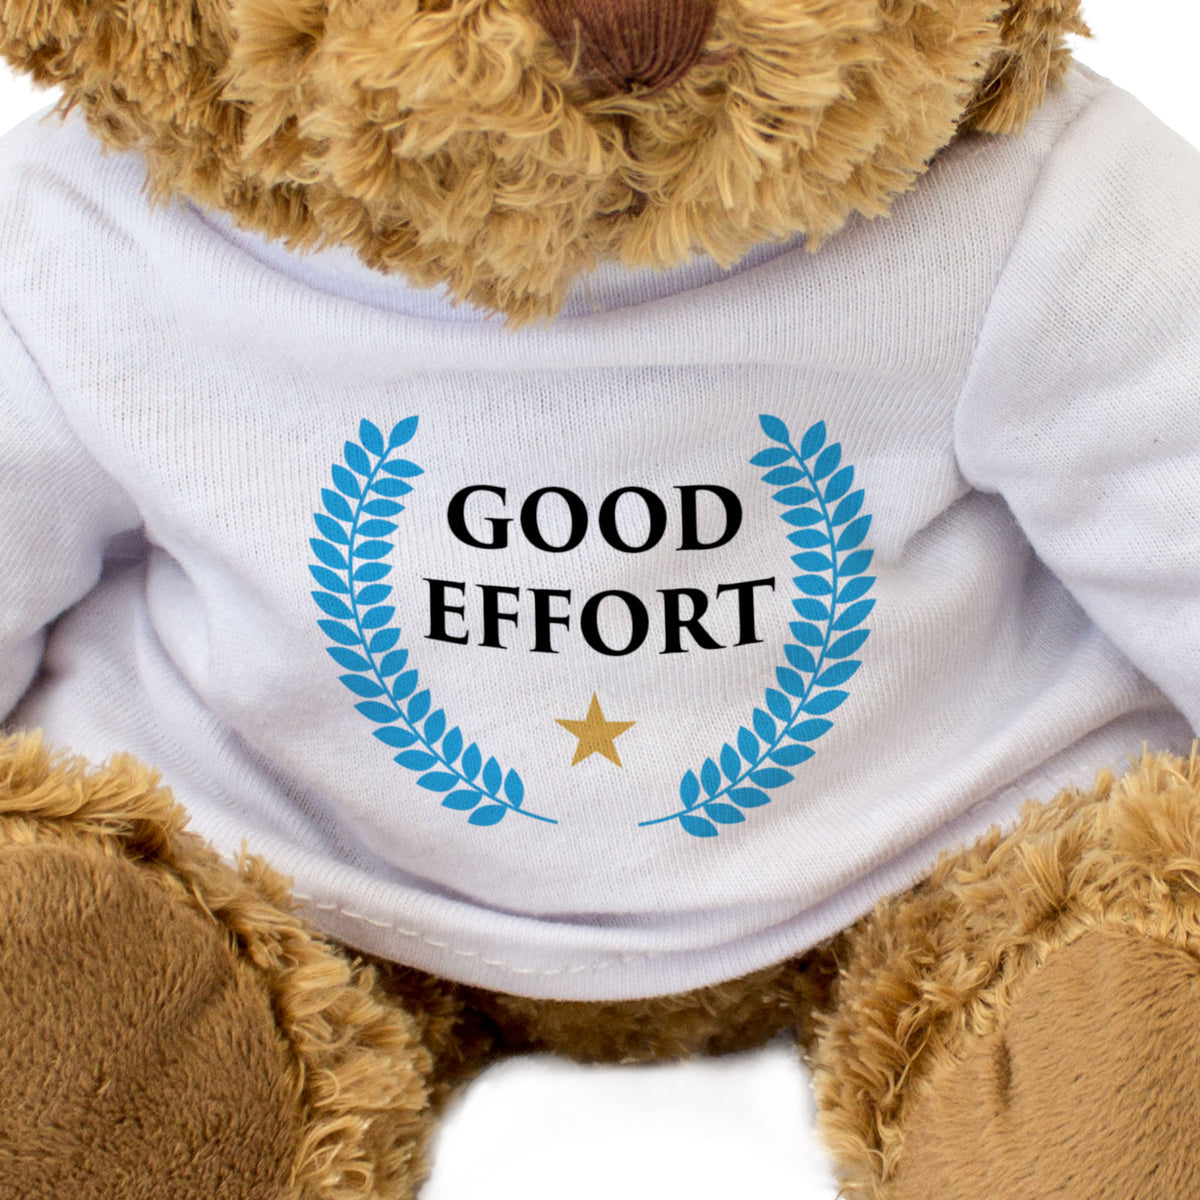 Good Effort - Teddy Bear